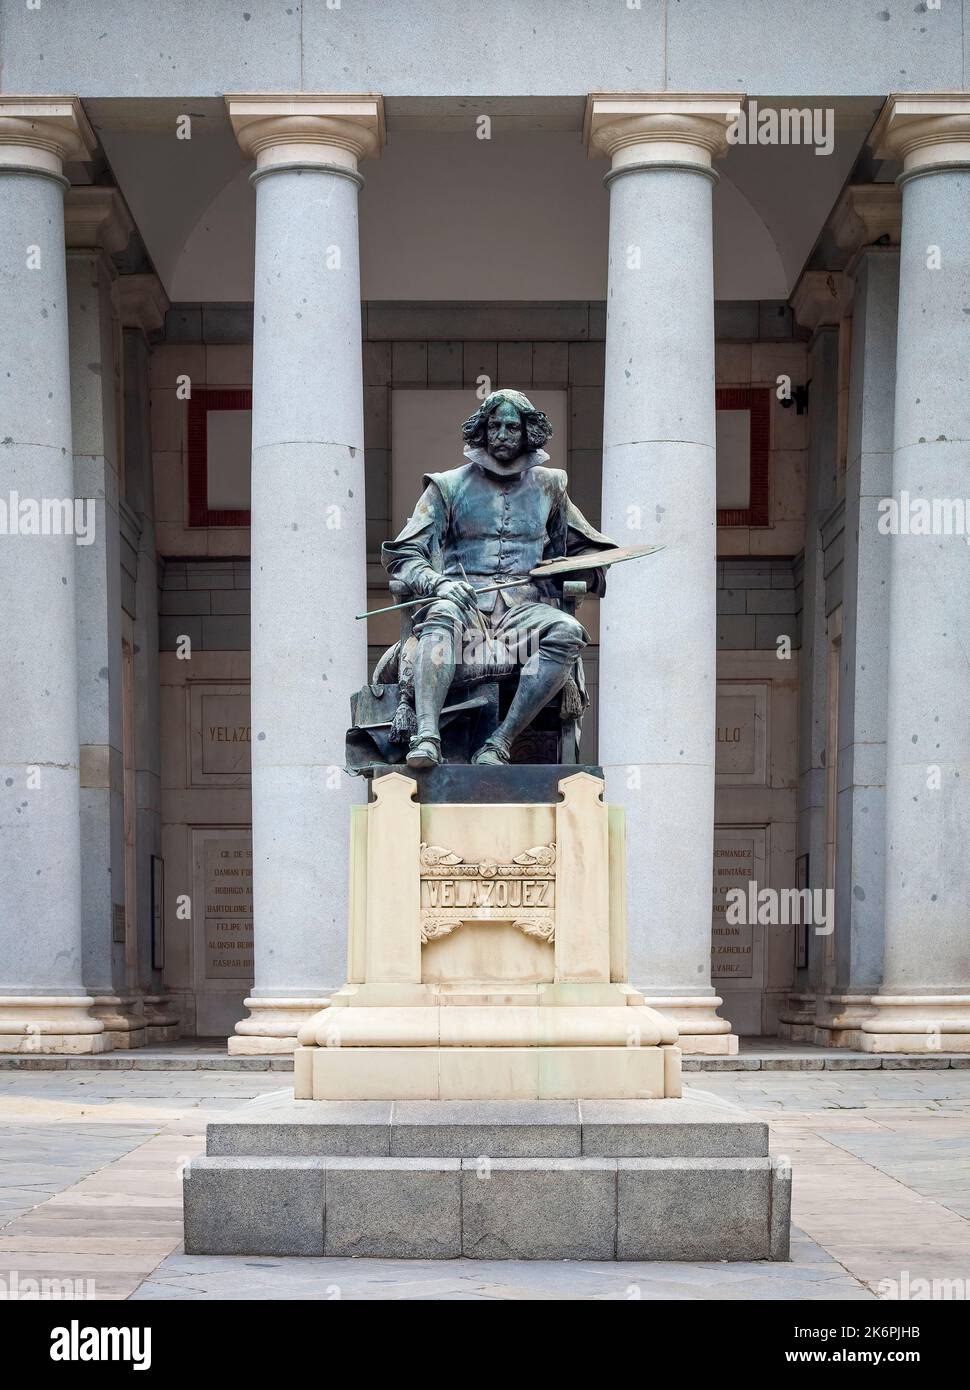 Editorial Malaga, Espagne - 29 septembre 2022 : la statue de Velázquez devant la porte principale du Musée du Prado, dédiée à Diego de Velázquez. Banque D'Images